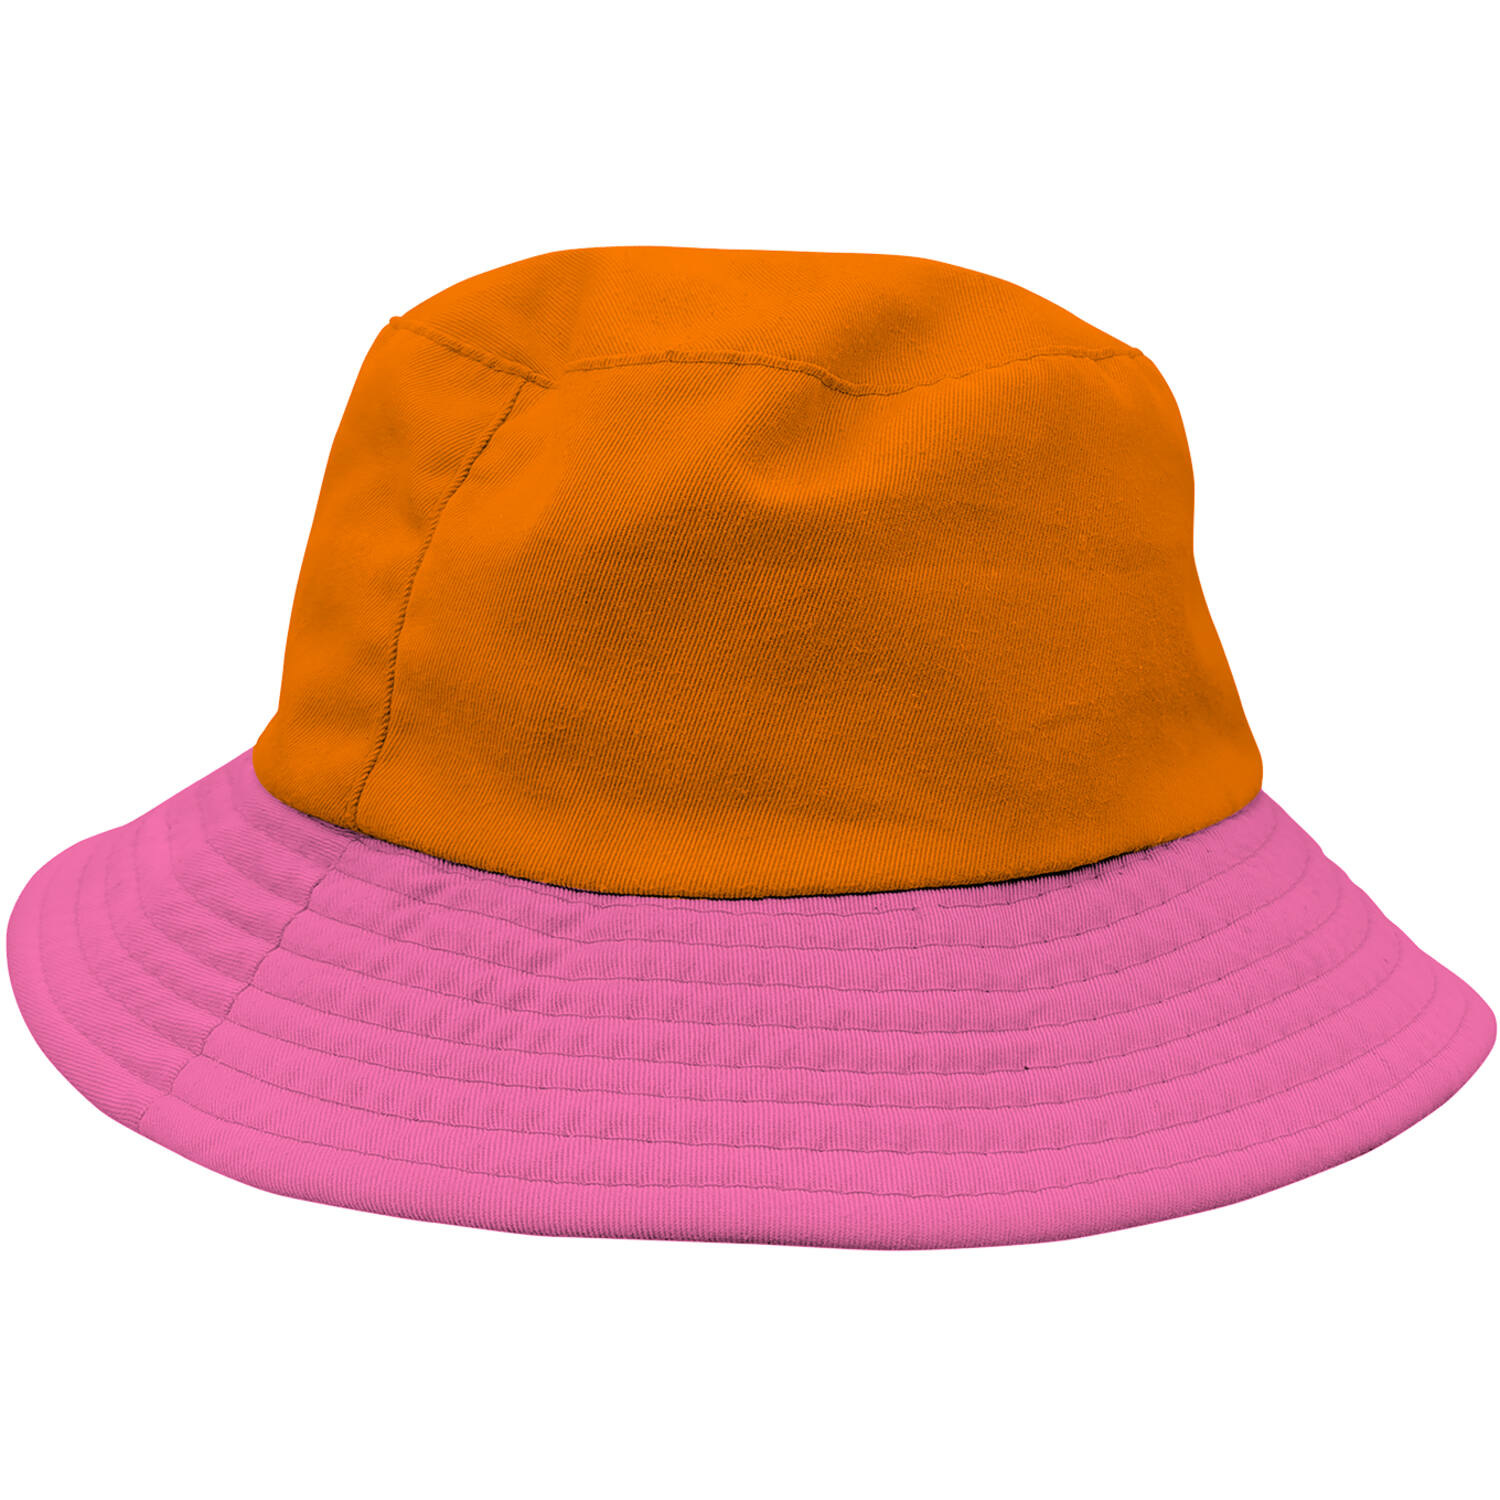 Vissershoed Colorblock Oranje/Roze